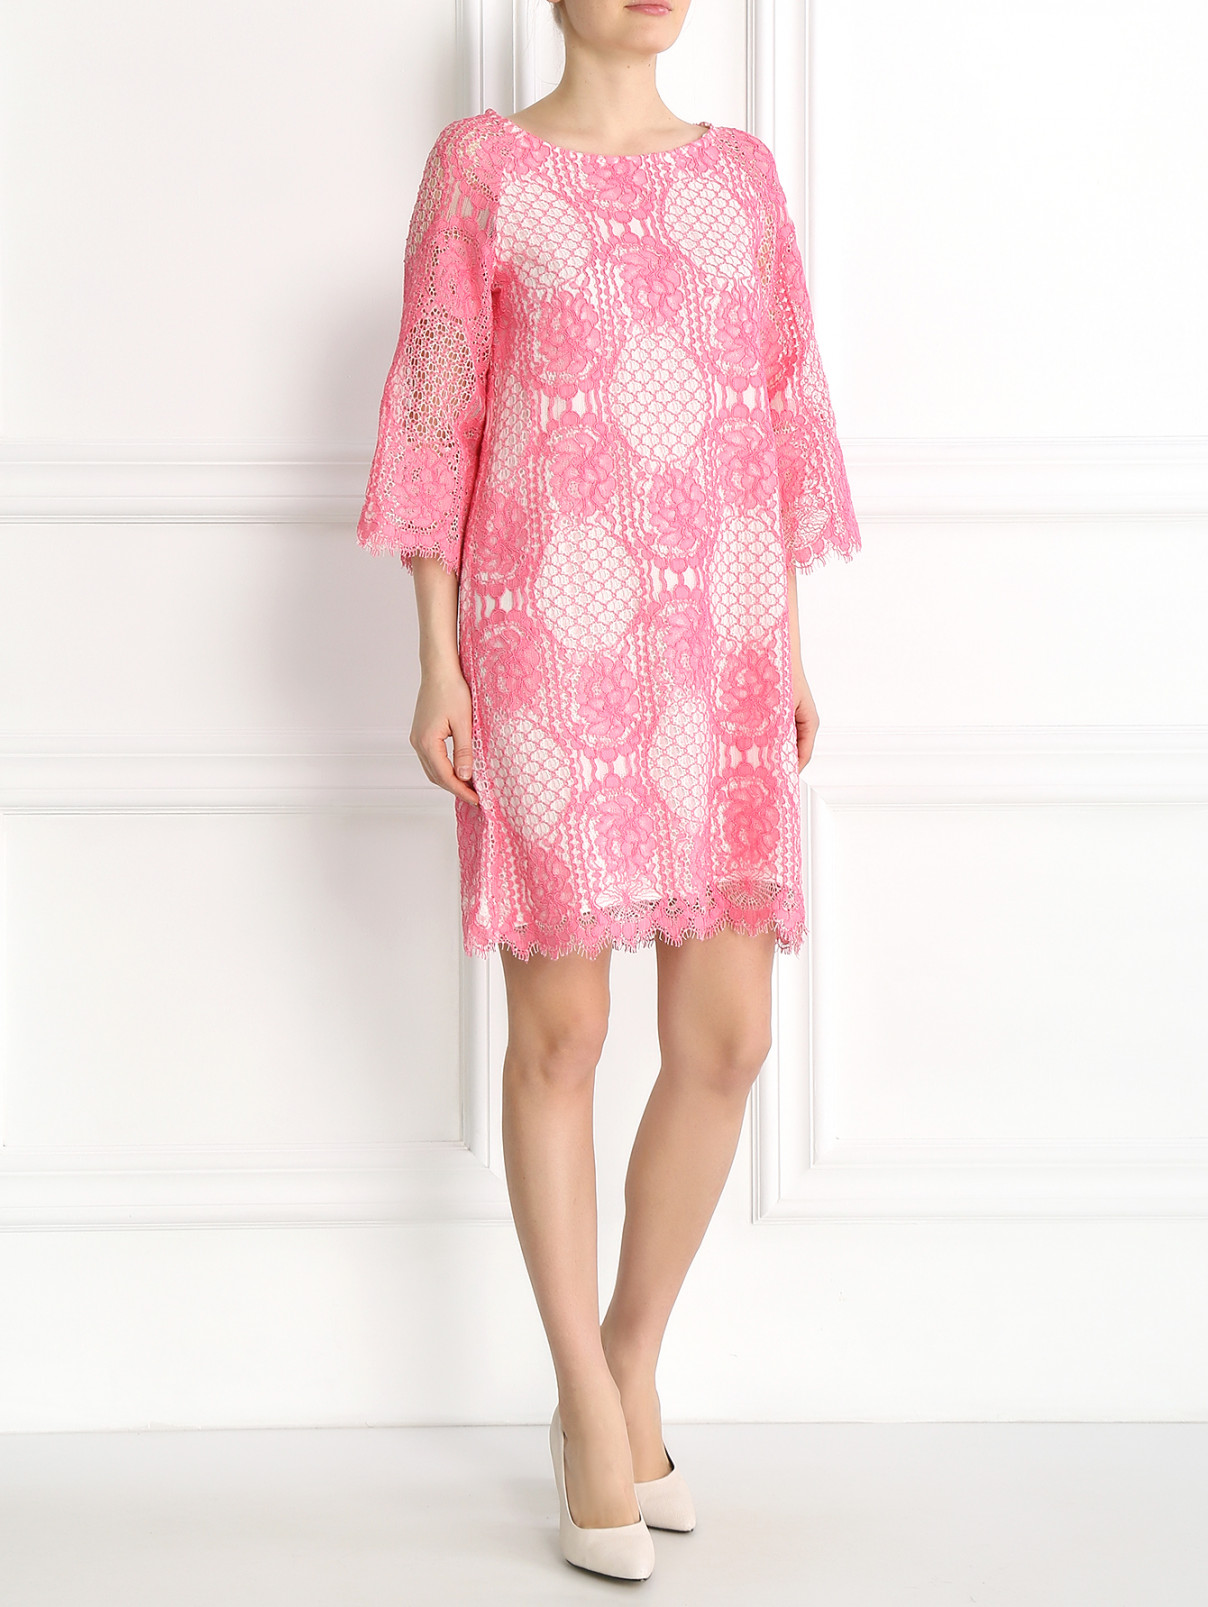 Платье из хлопка с отделкой из кружева Valerie Khalfon  –  Модель Общий вид  – Цвет:  Розовый